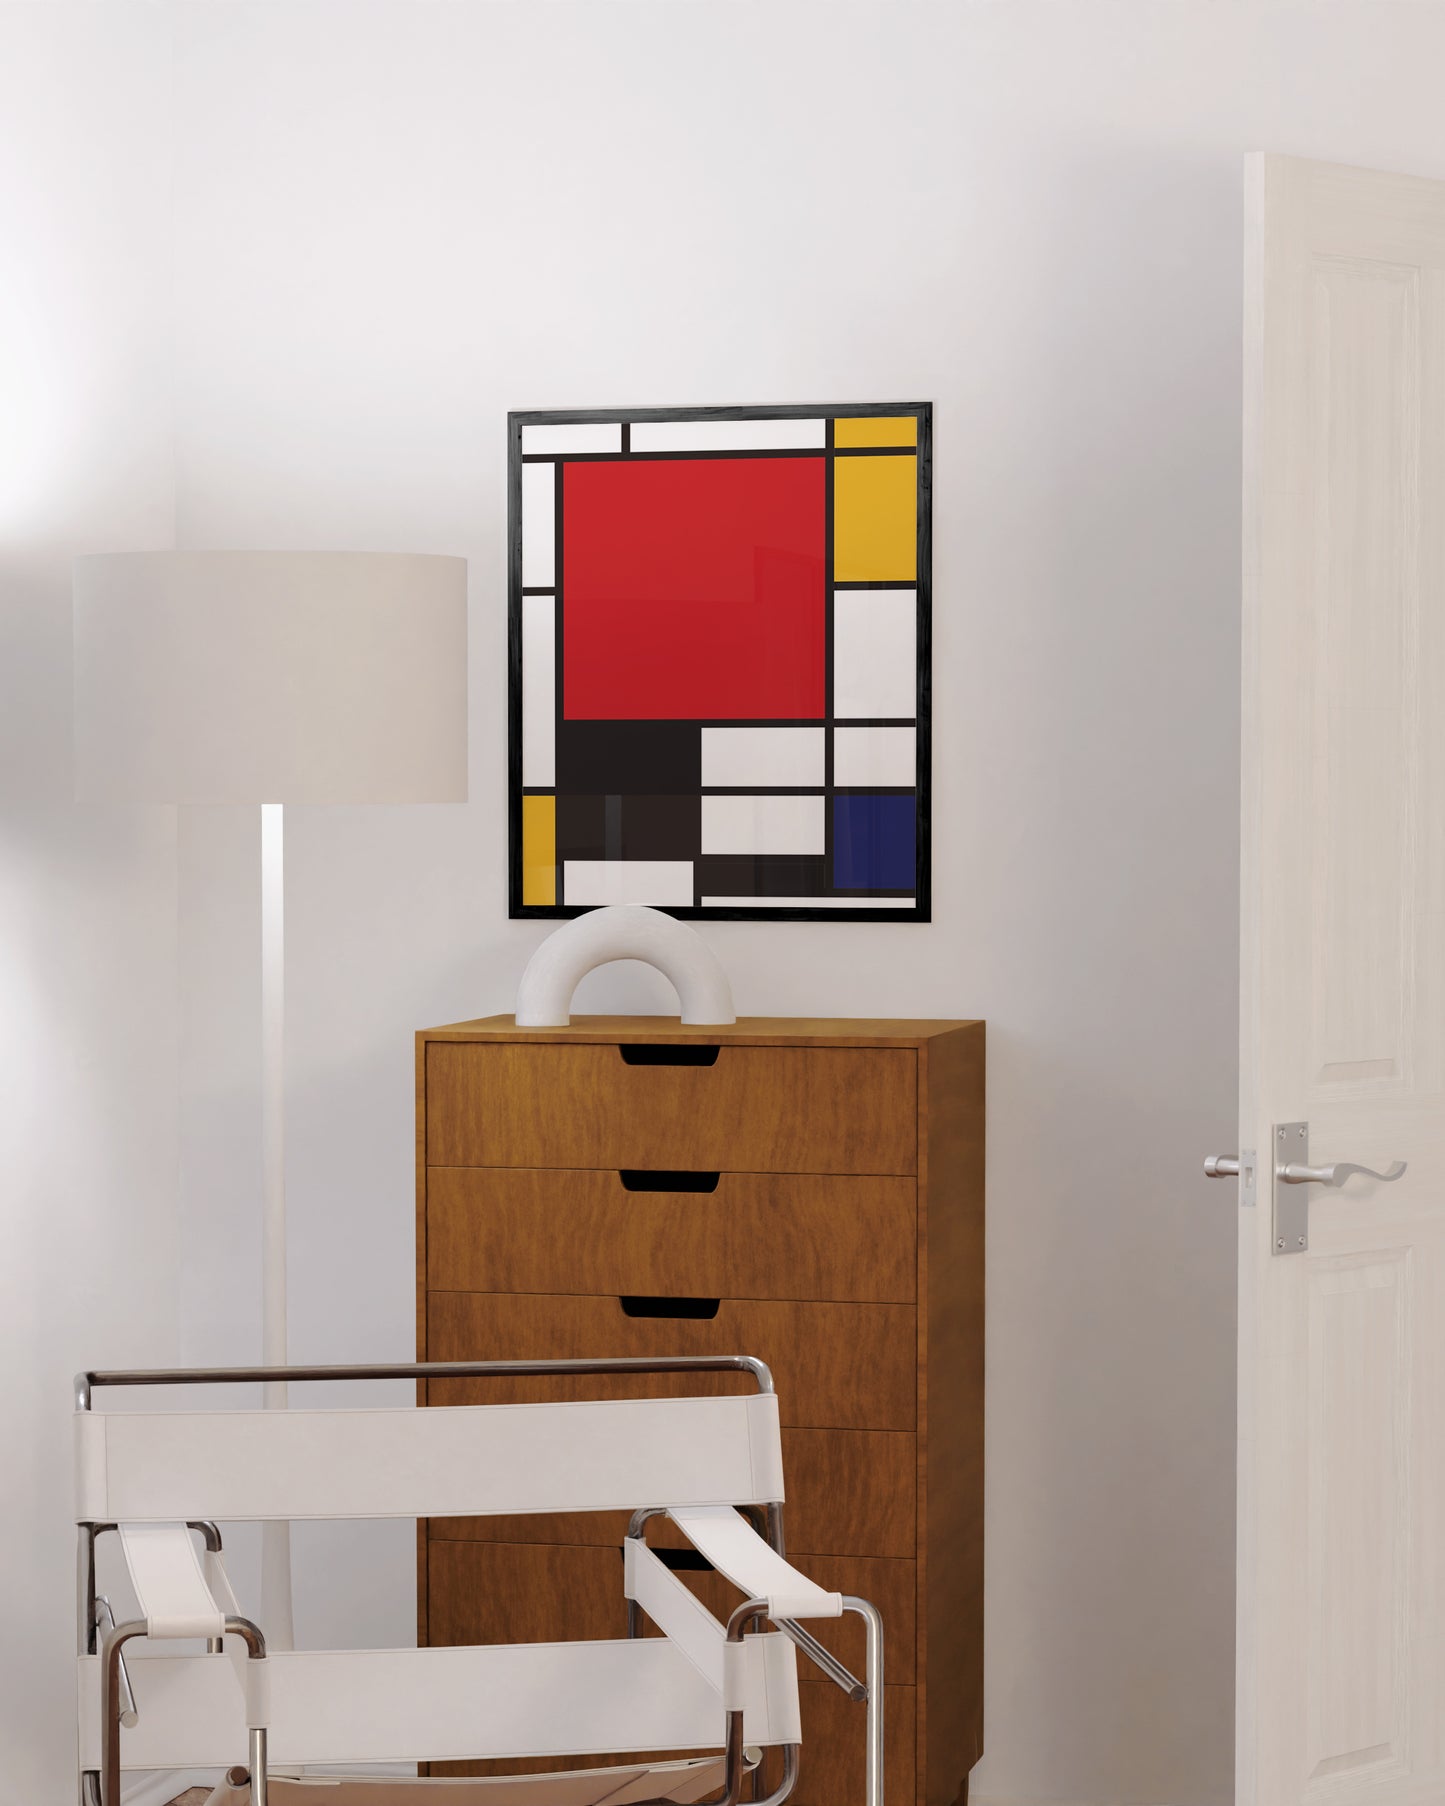 Piet Mondrian Composition